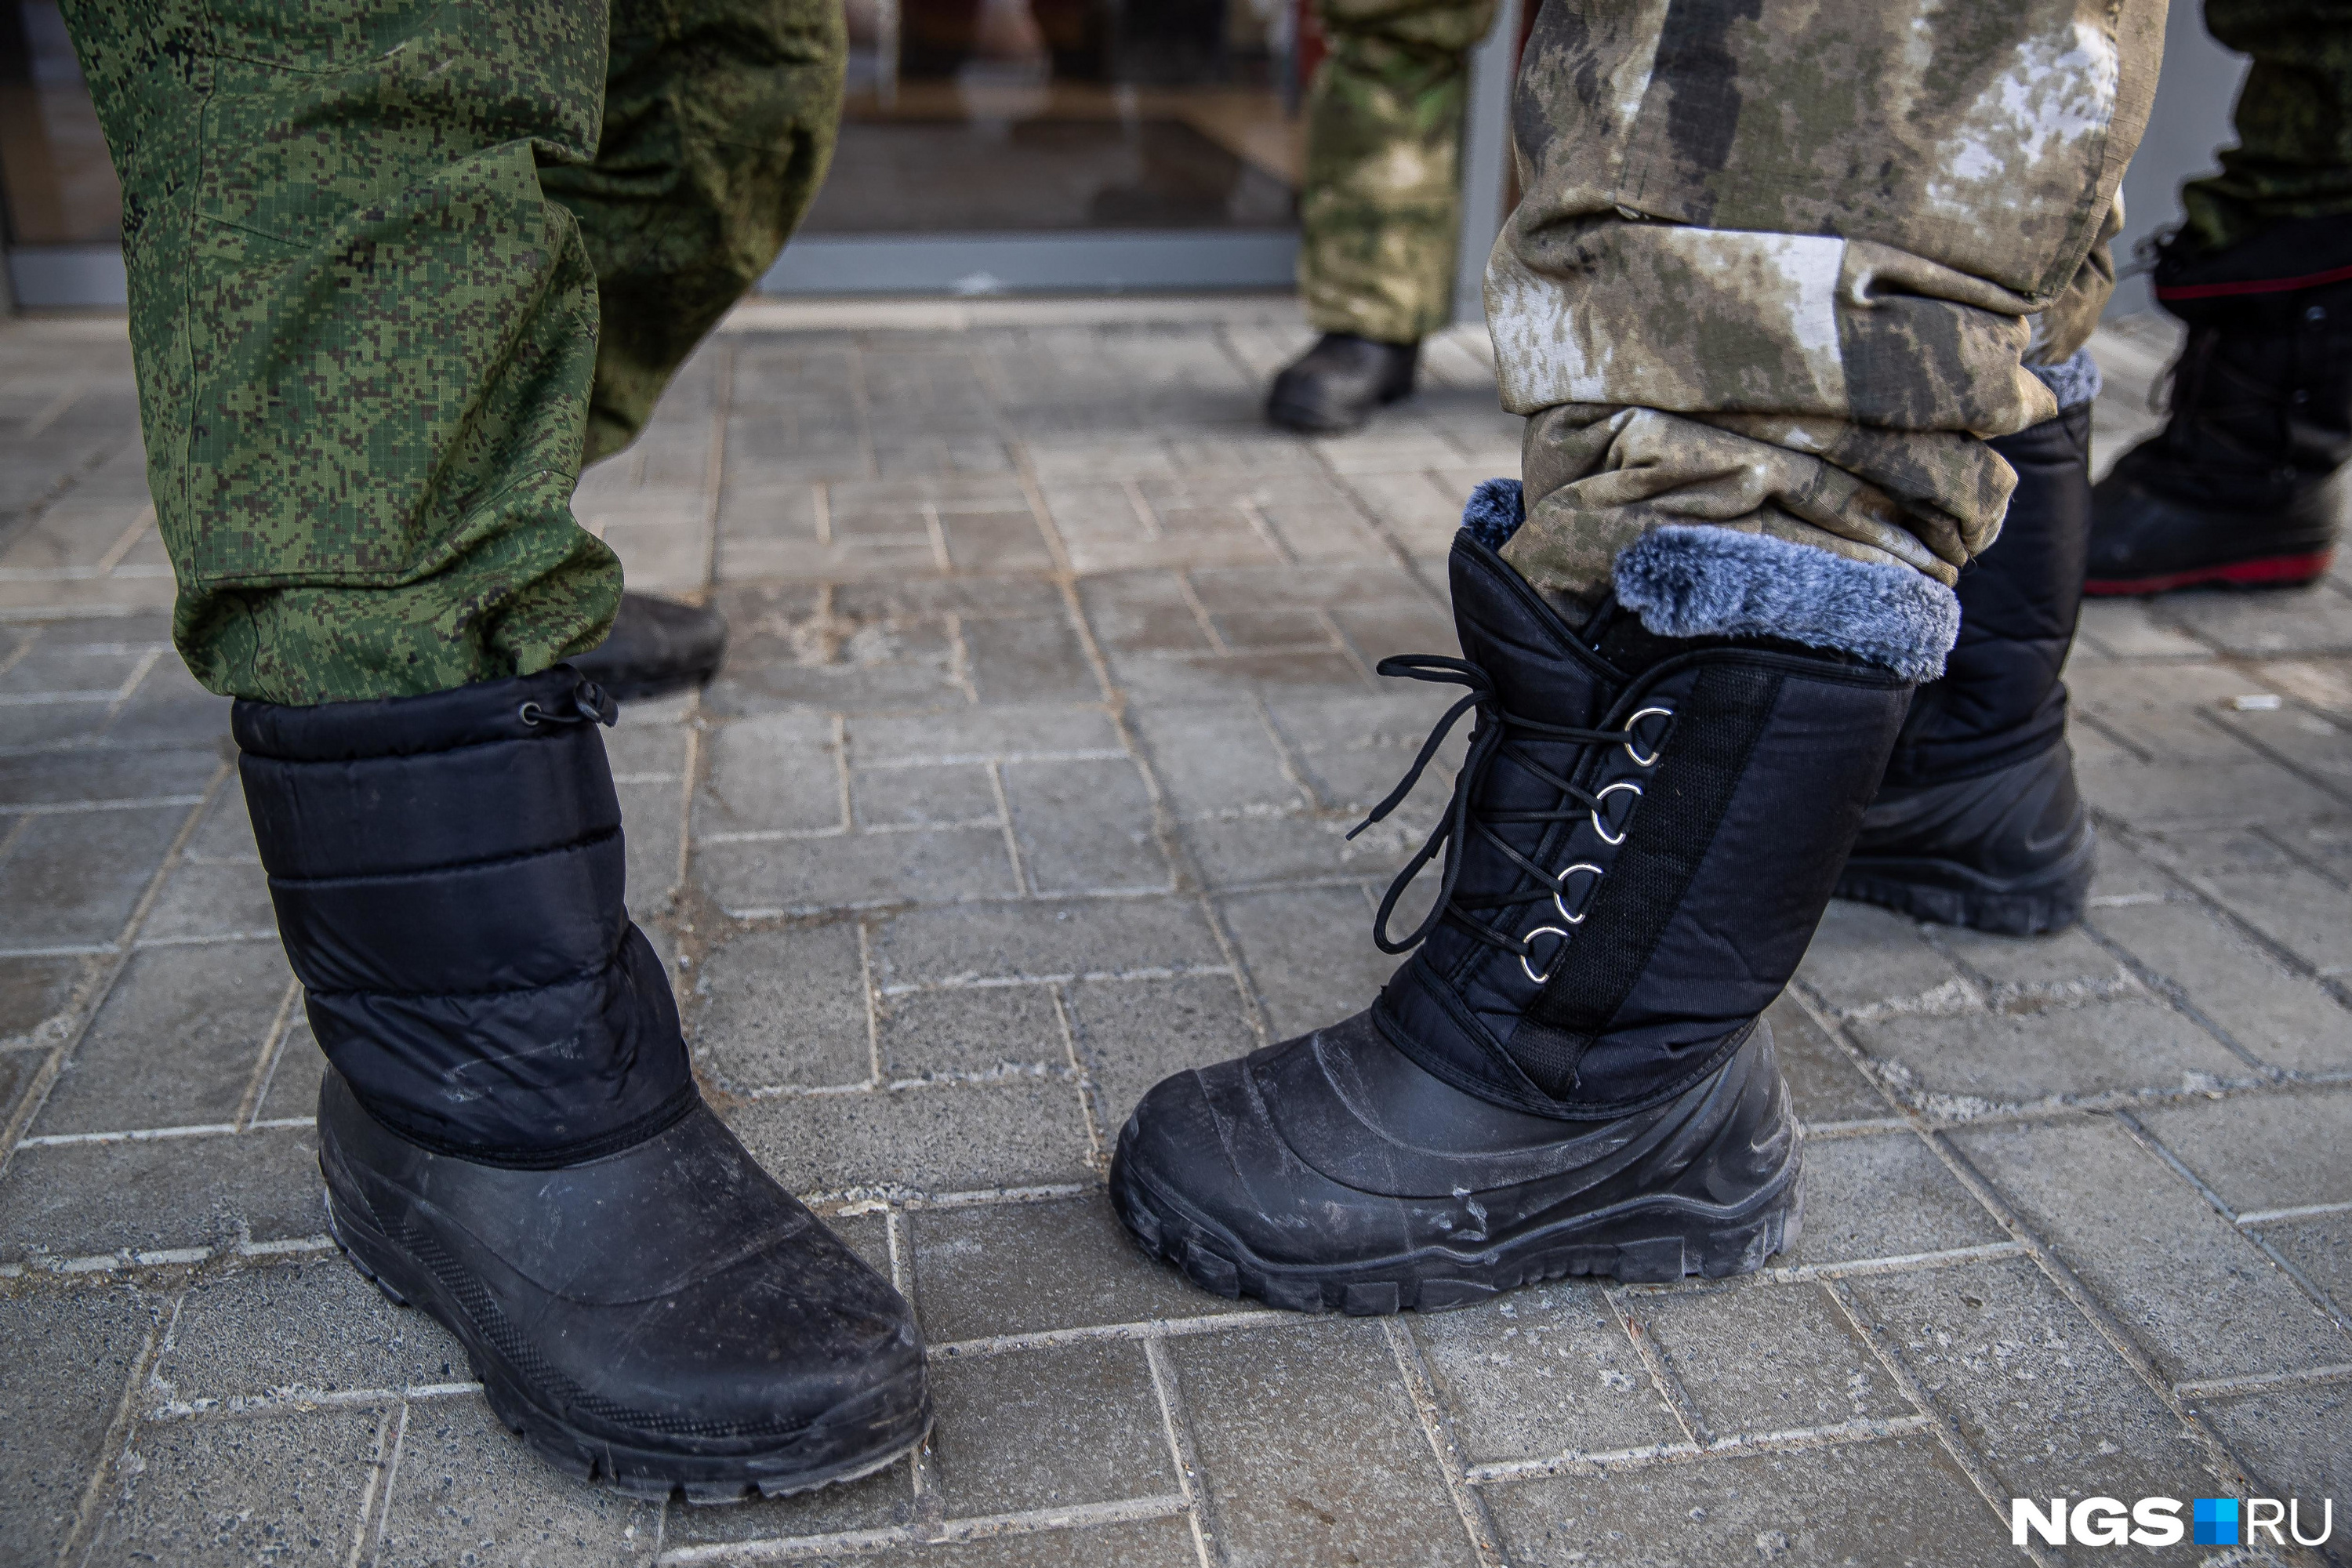 Пограничники ФСБ предлагают контракт, который заменит призыв по срочной службе